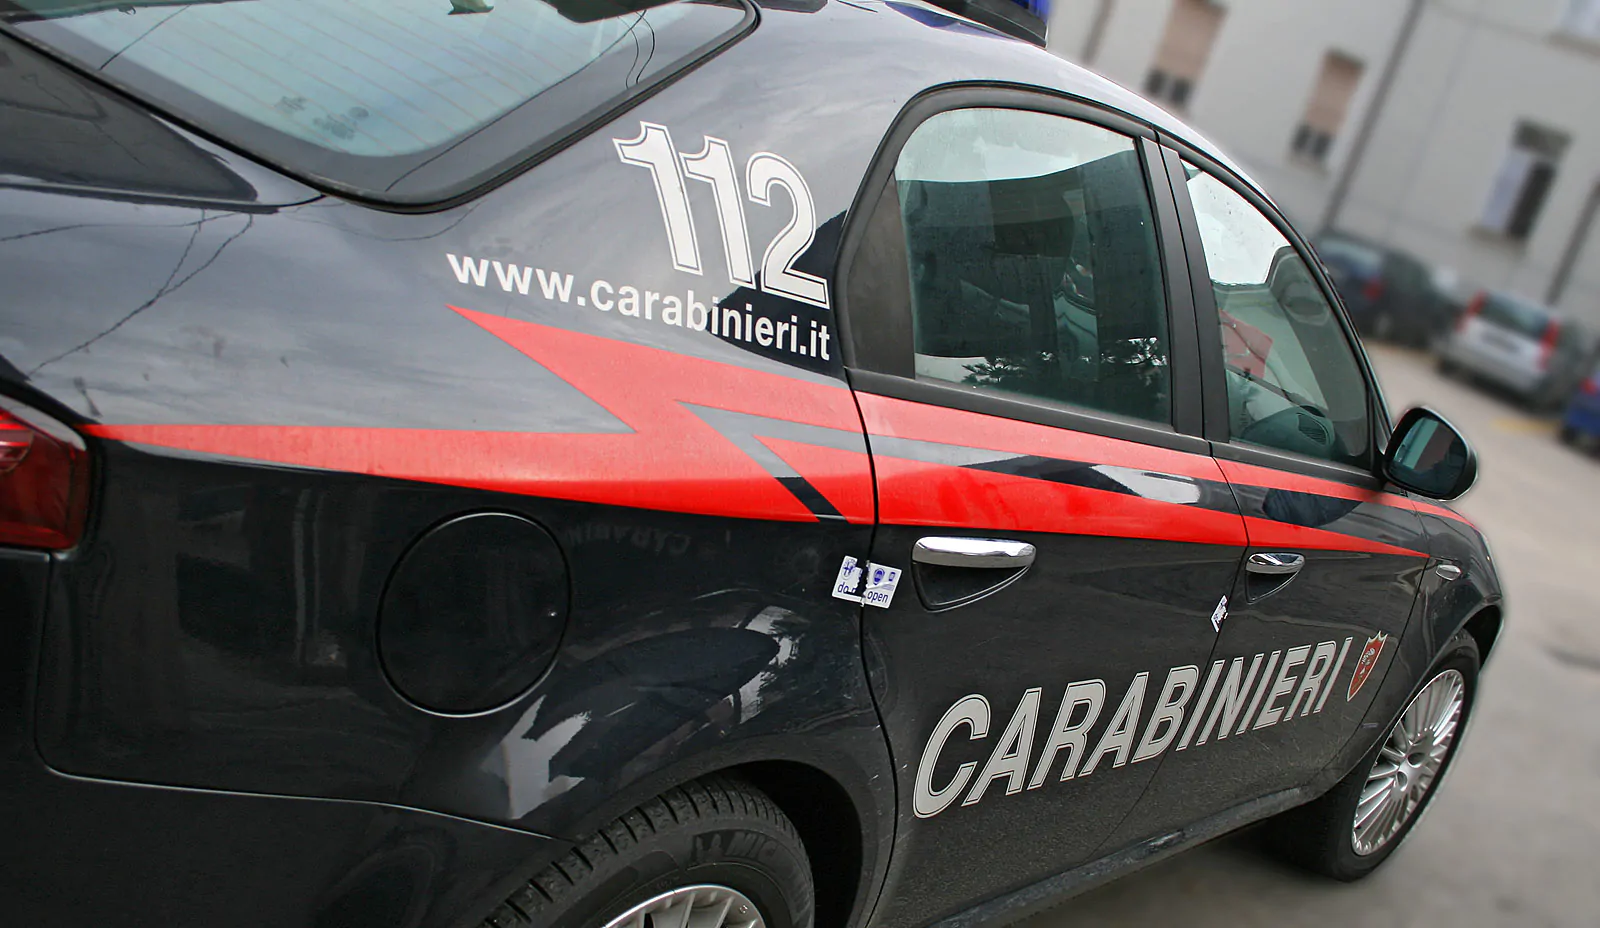 carabinieri gazzella 111